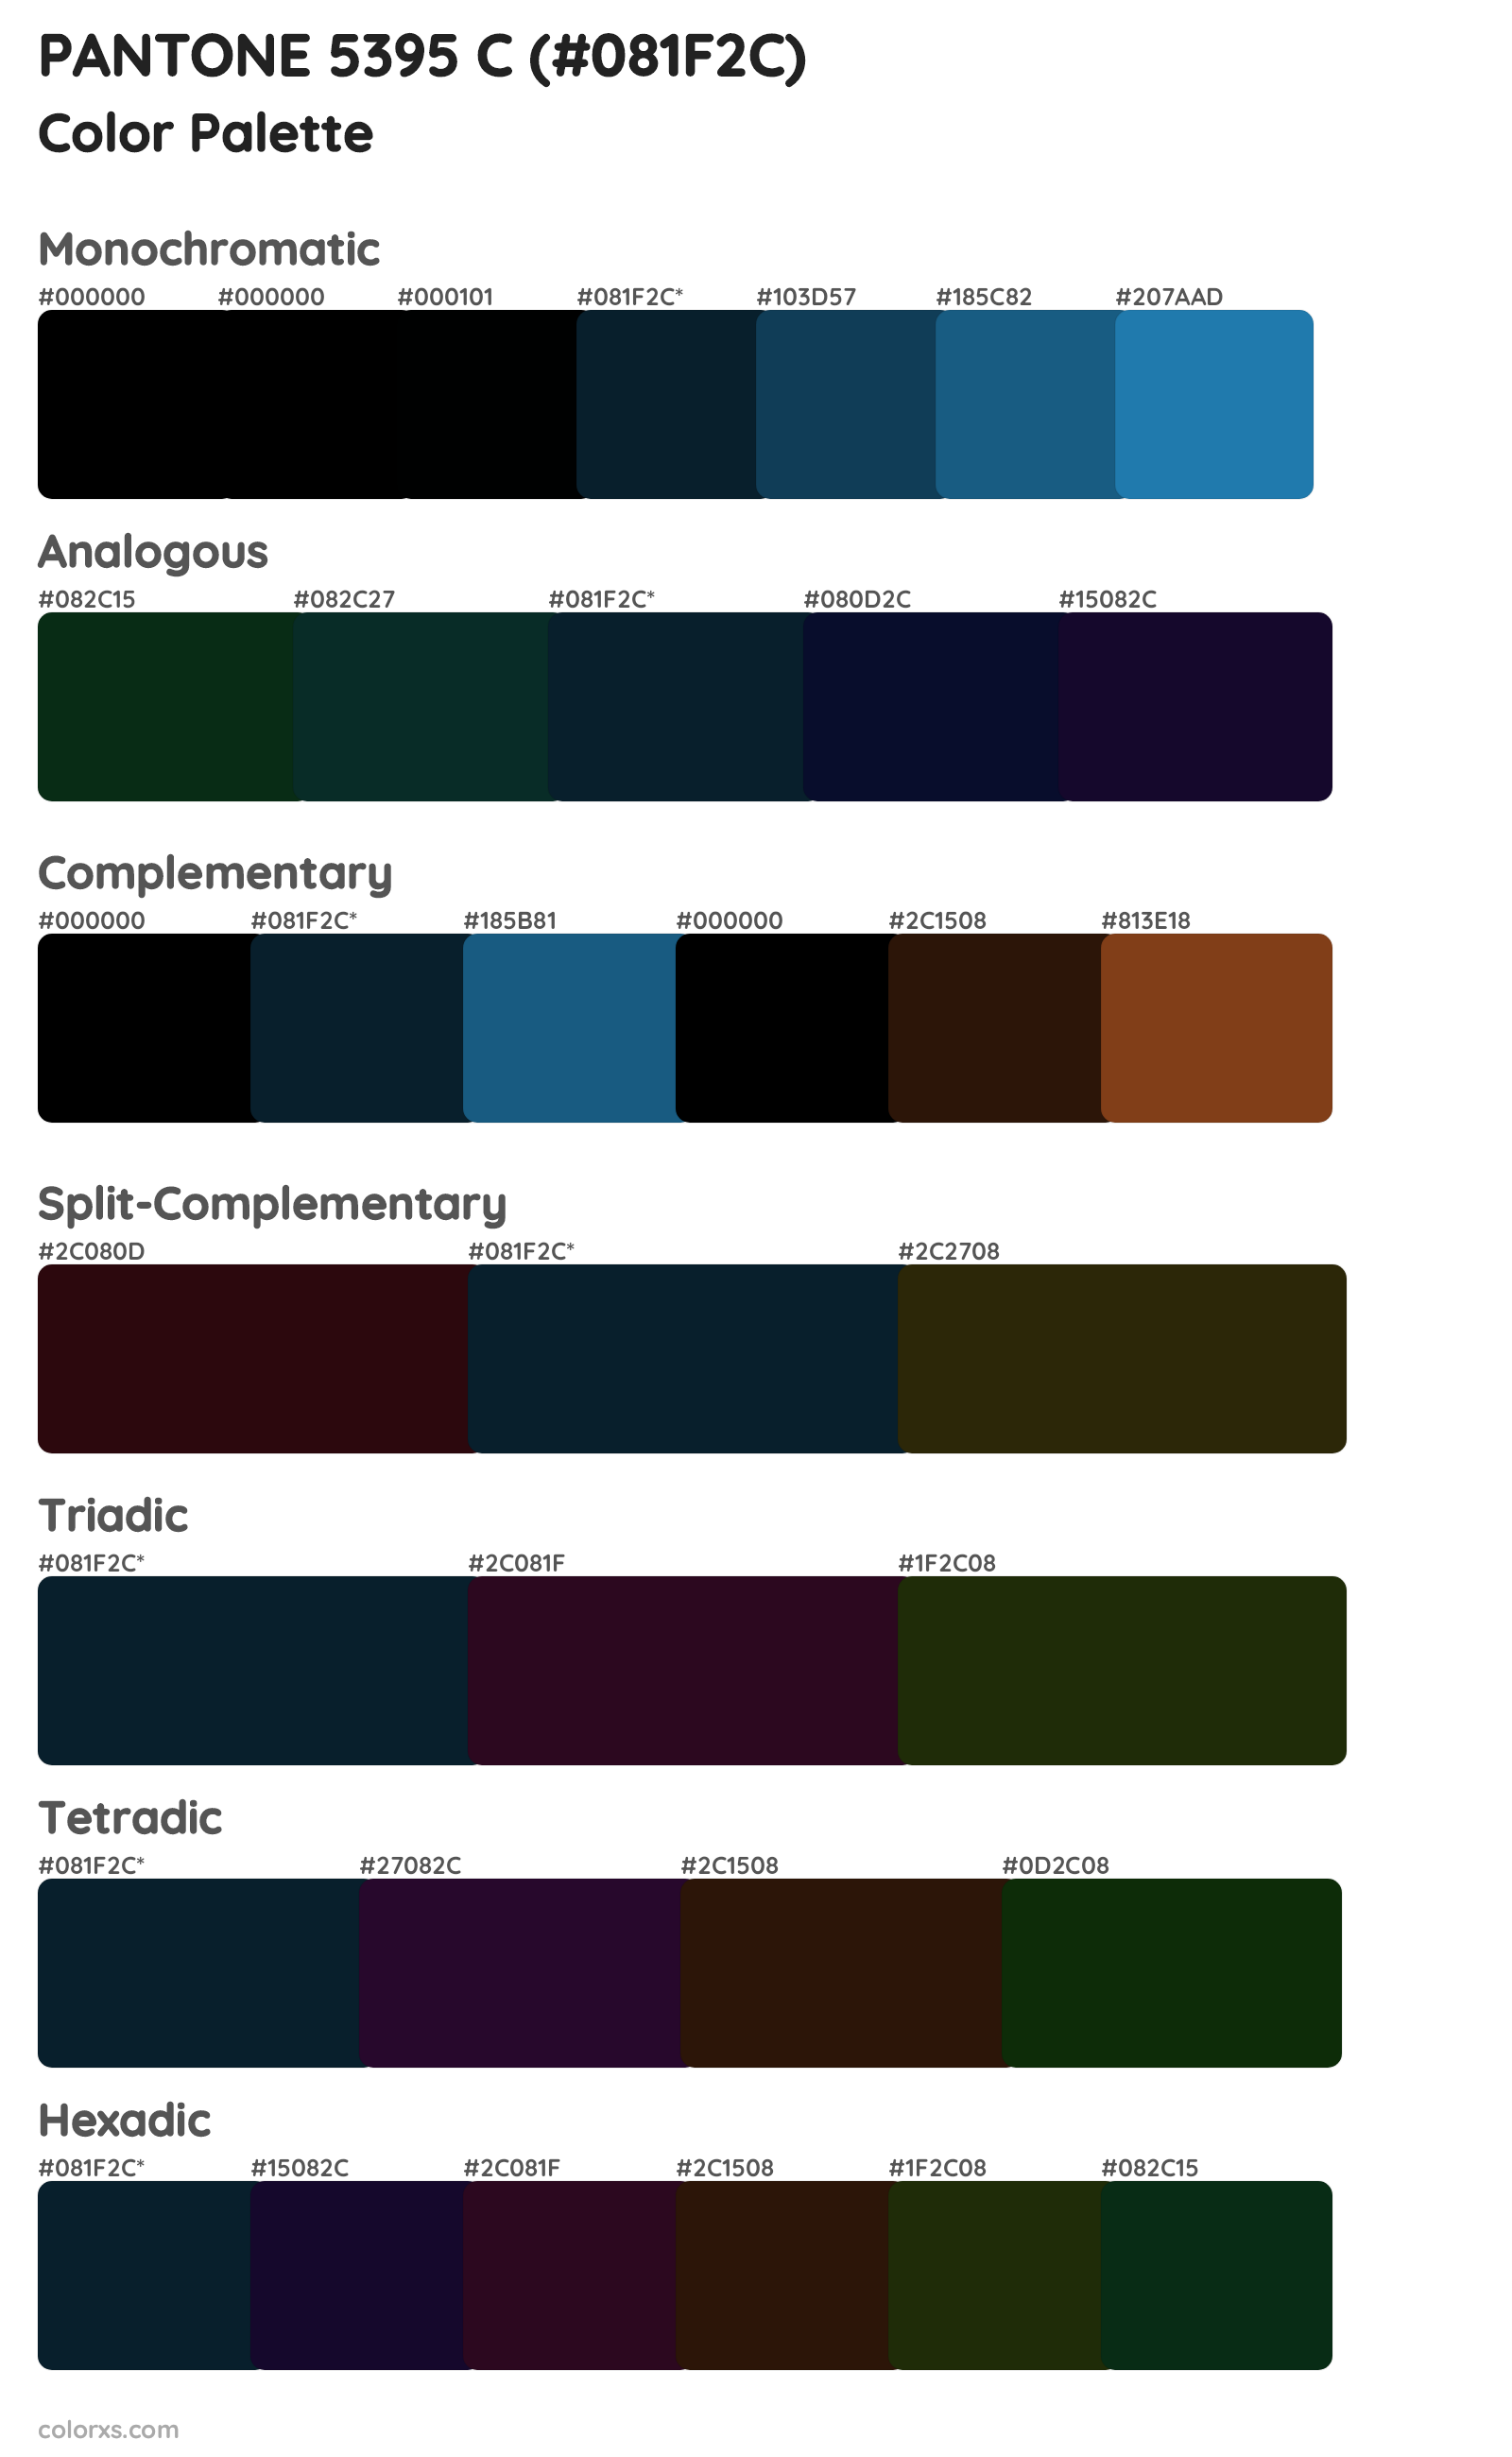 PANTONE 5395 C Color Scheme Palettes